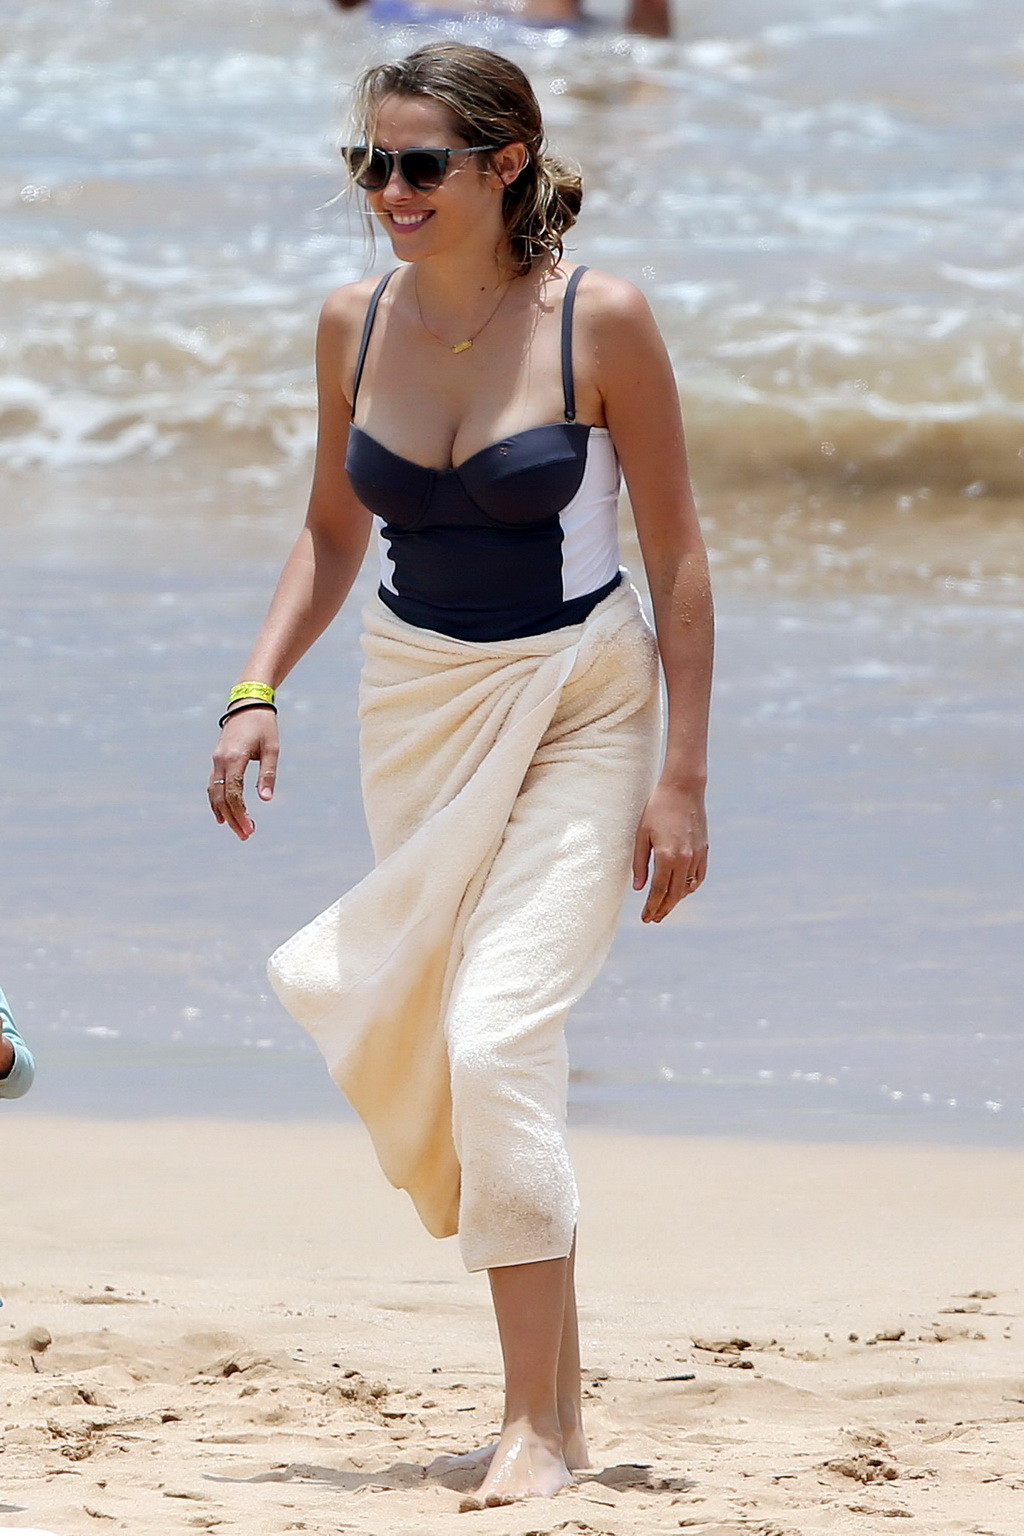 Teresa palmer vollbusig in einem tief ausgeschnittenen Badeanzug am hawaiianischen Strand
 #75162450